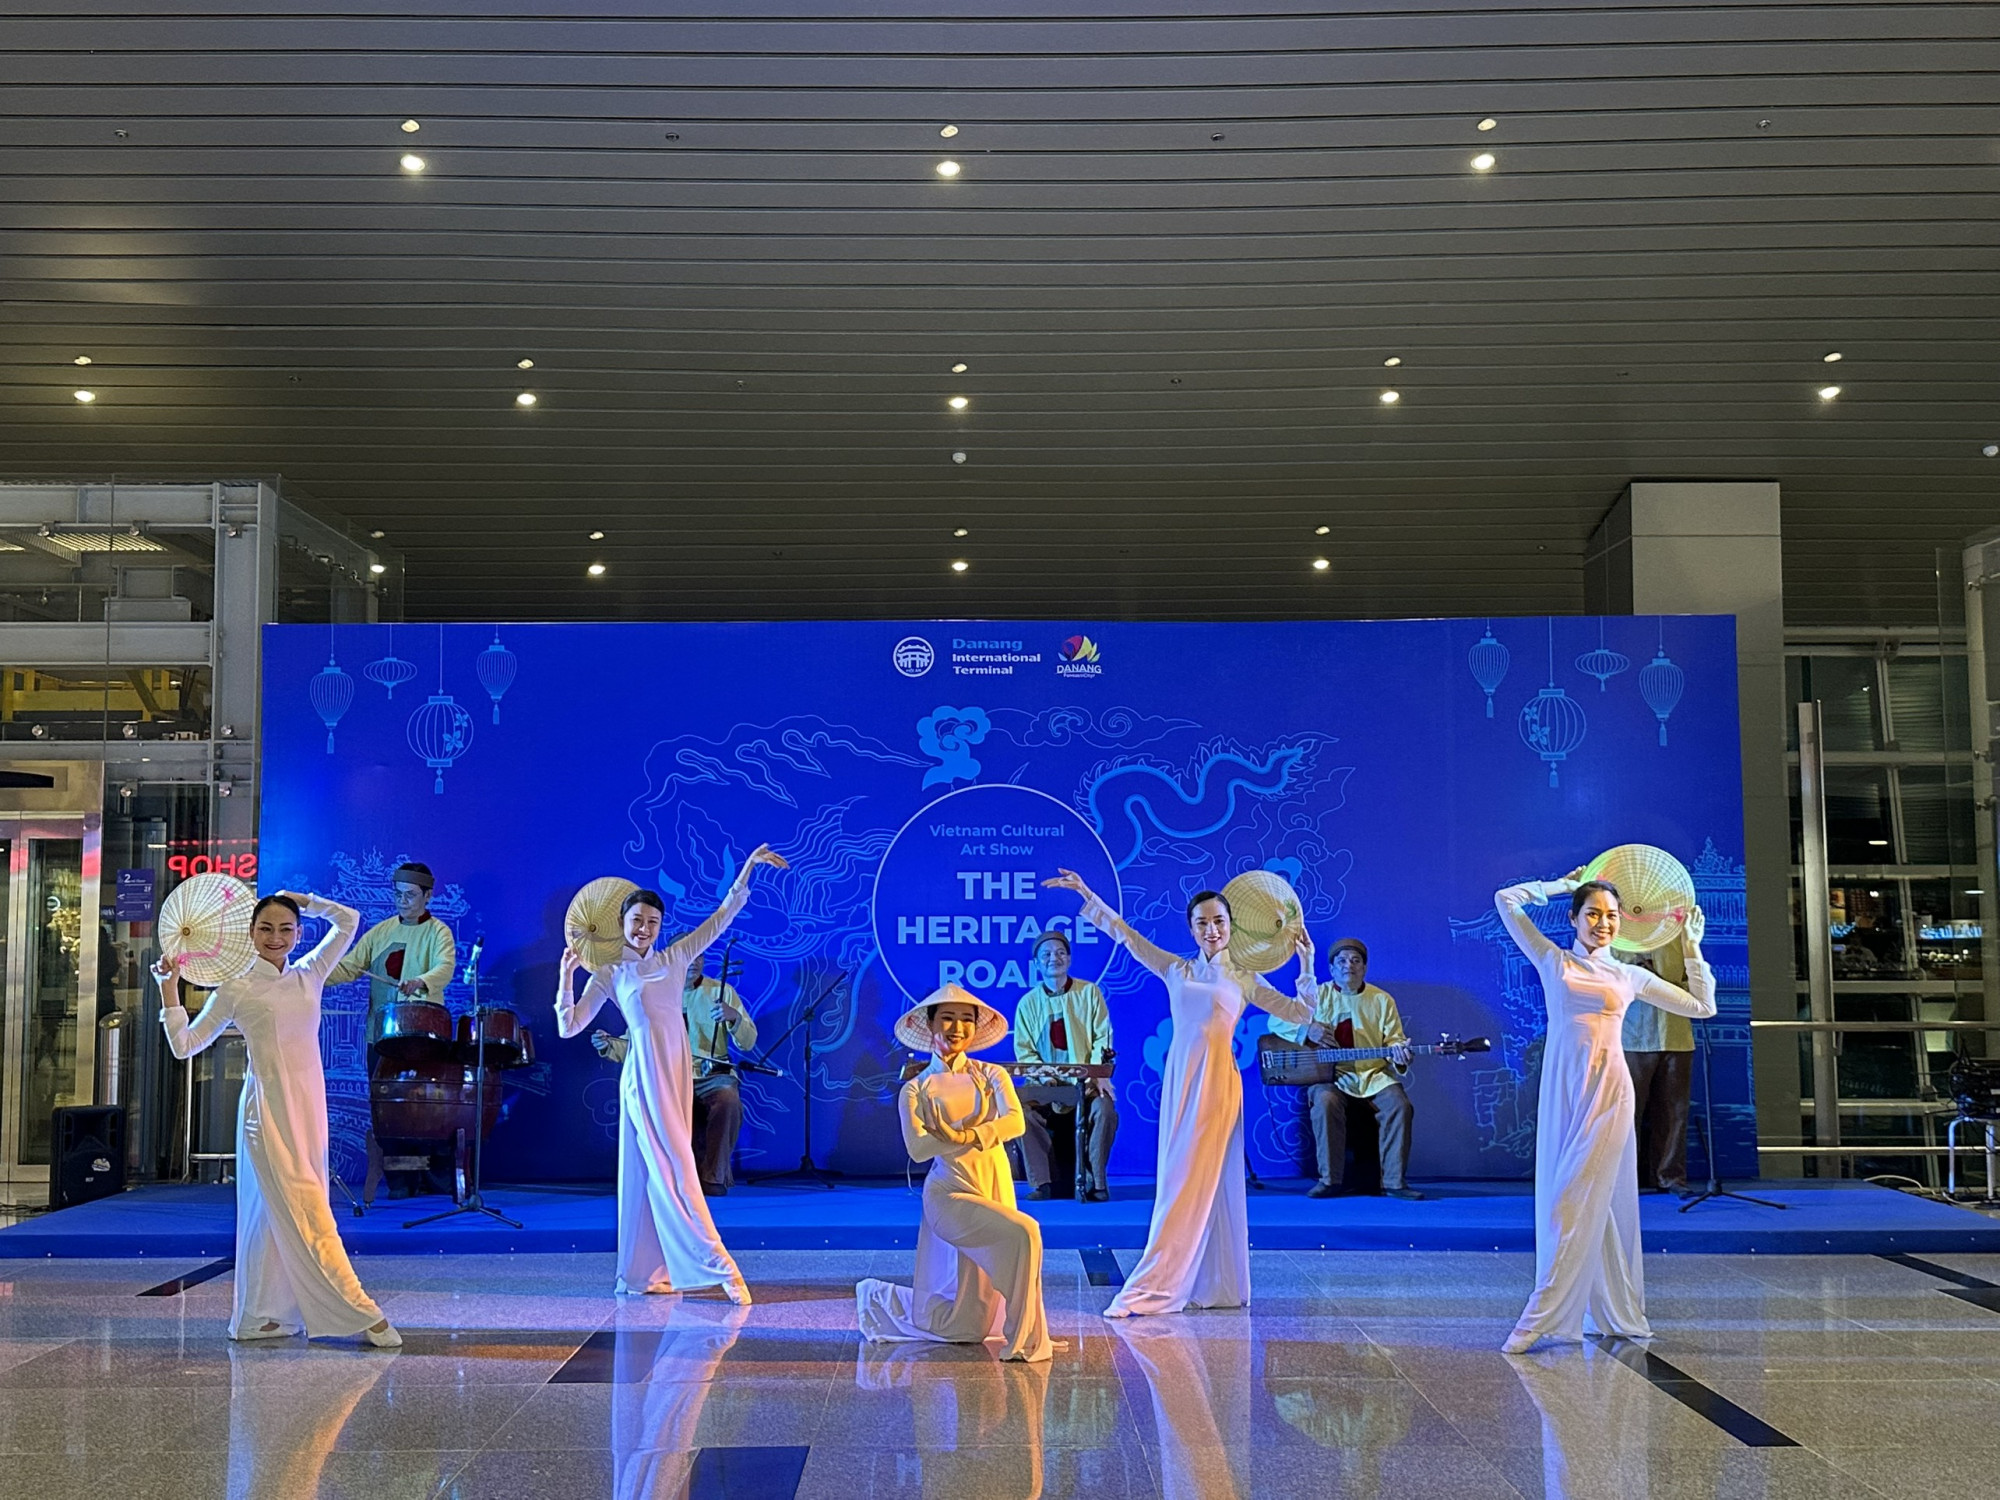 Nhằm thu hút và chào đón du khách quốc tế đến với mảnh đất miền Trung Việt Nam, Hội An - Đà Nẵng đã tổ chức nhiều giải pháp hữu hiệu để xúc tiến, quảng bá, giới thiệu tiềm năng du lịch cùng vẻ đẹp thiên nhiên, lịch sử, văn hóa và con người đến với bạn bè ở nước ngoài.